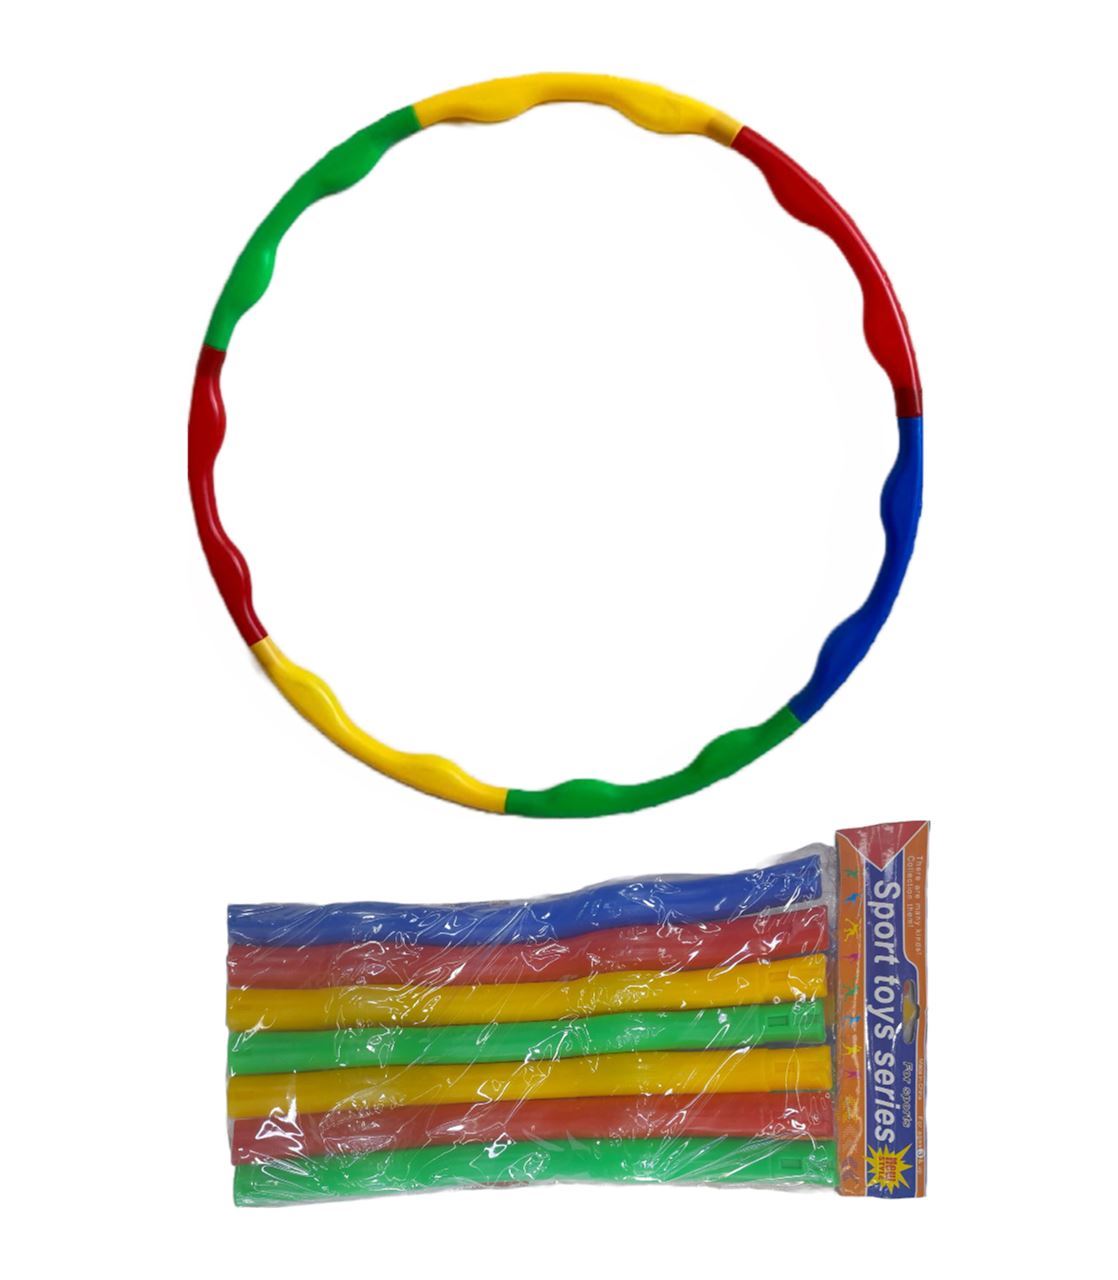 Hula Hoop diameter 70cm